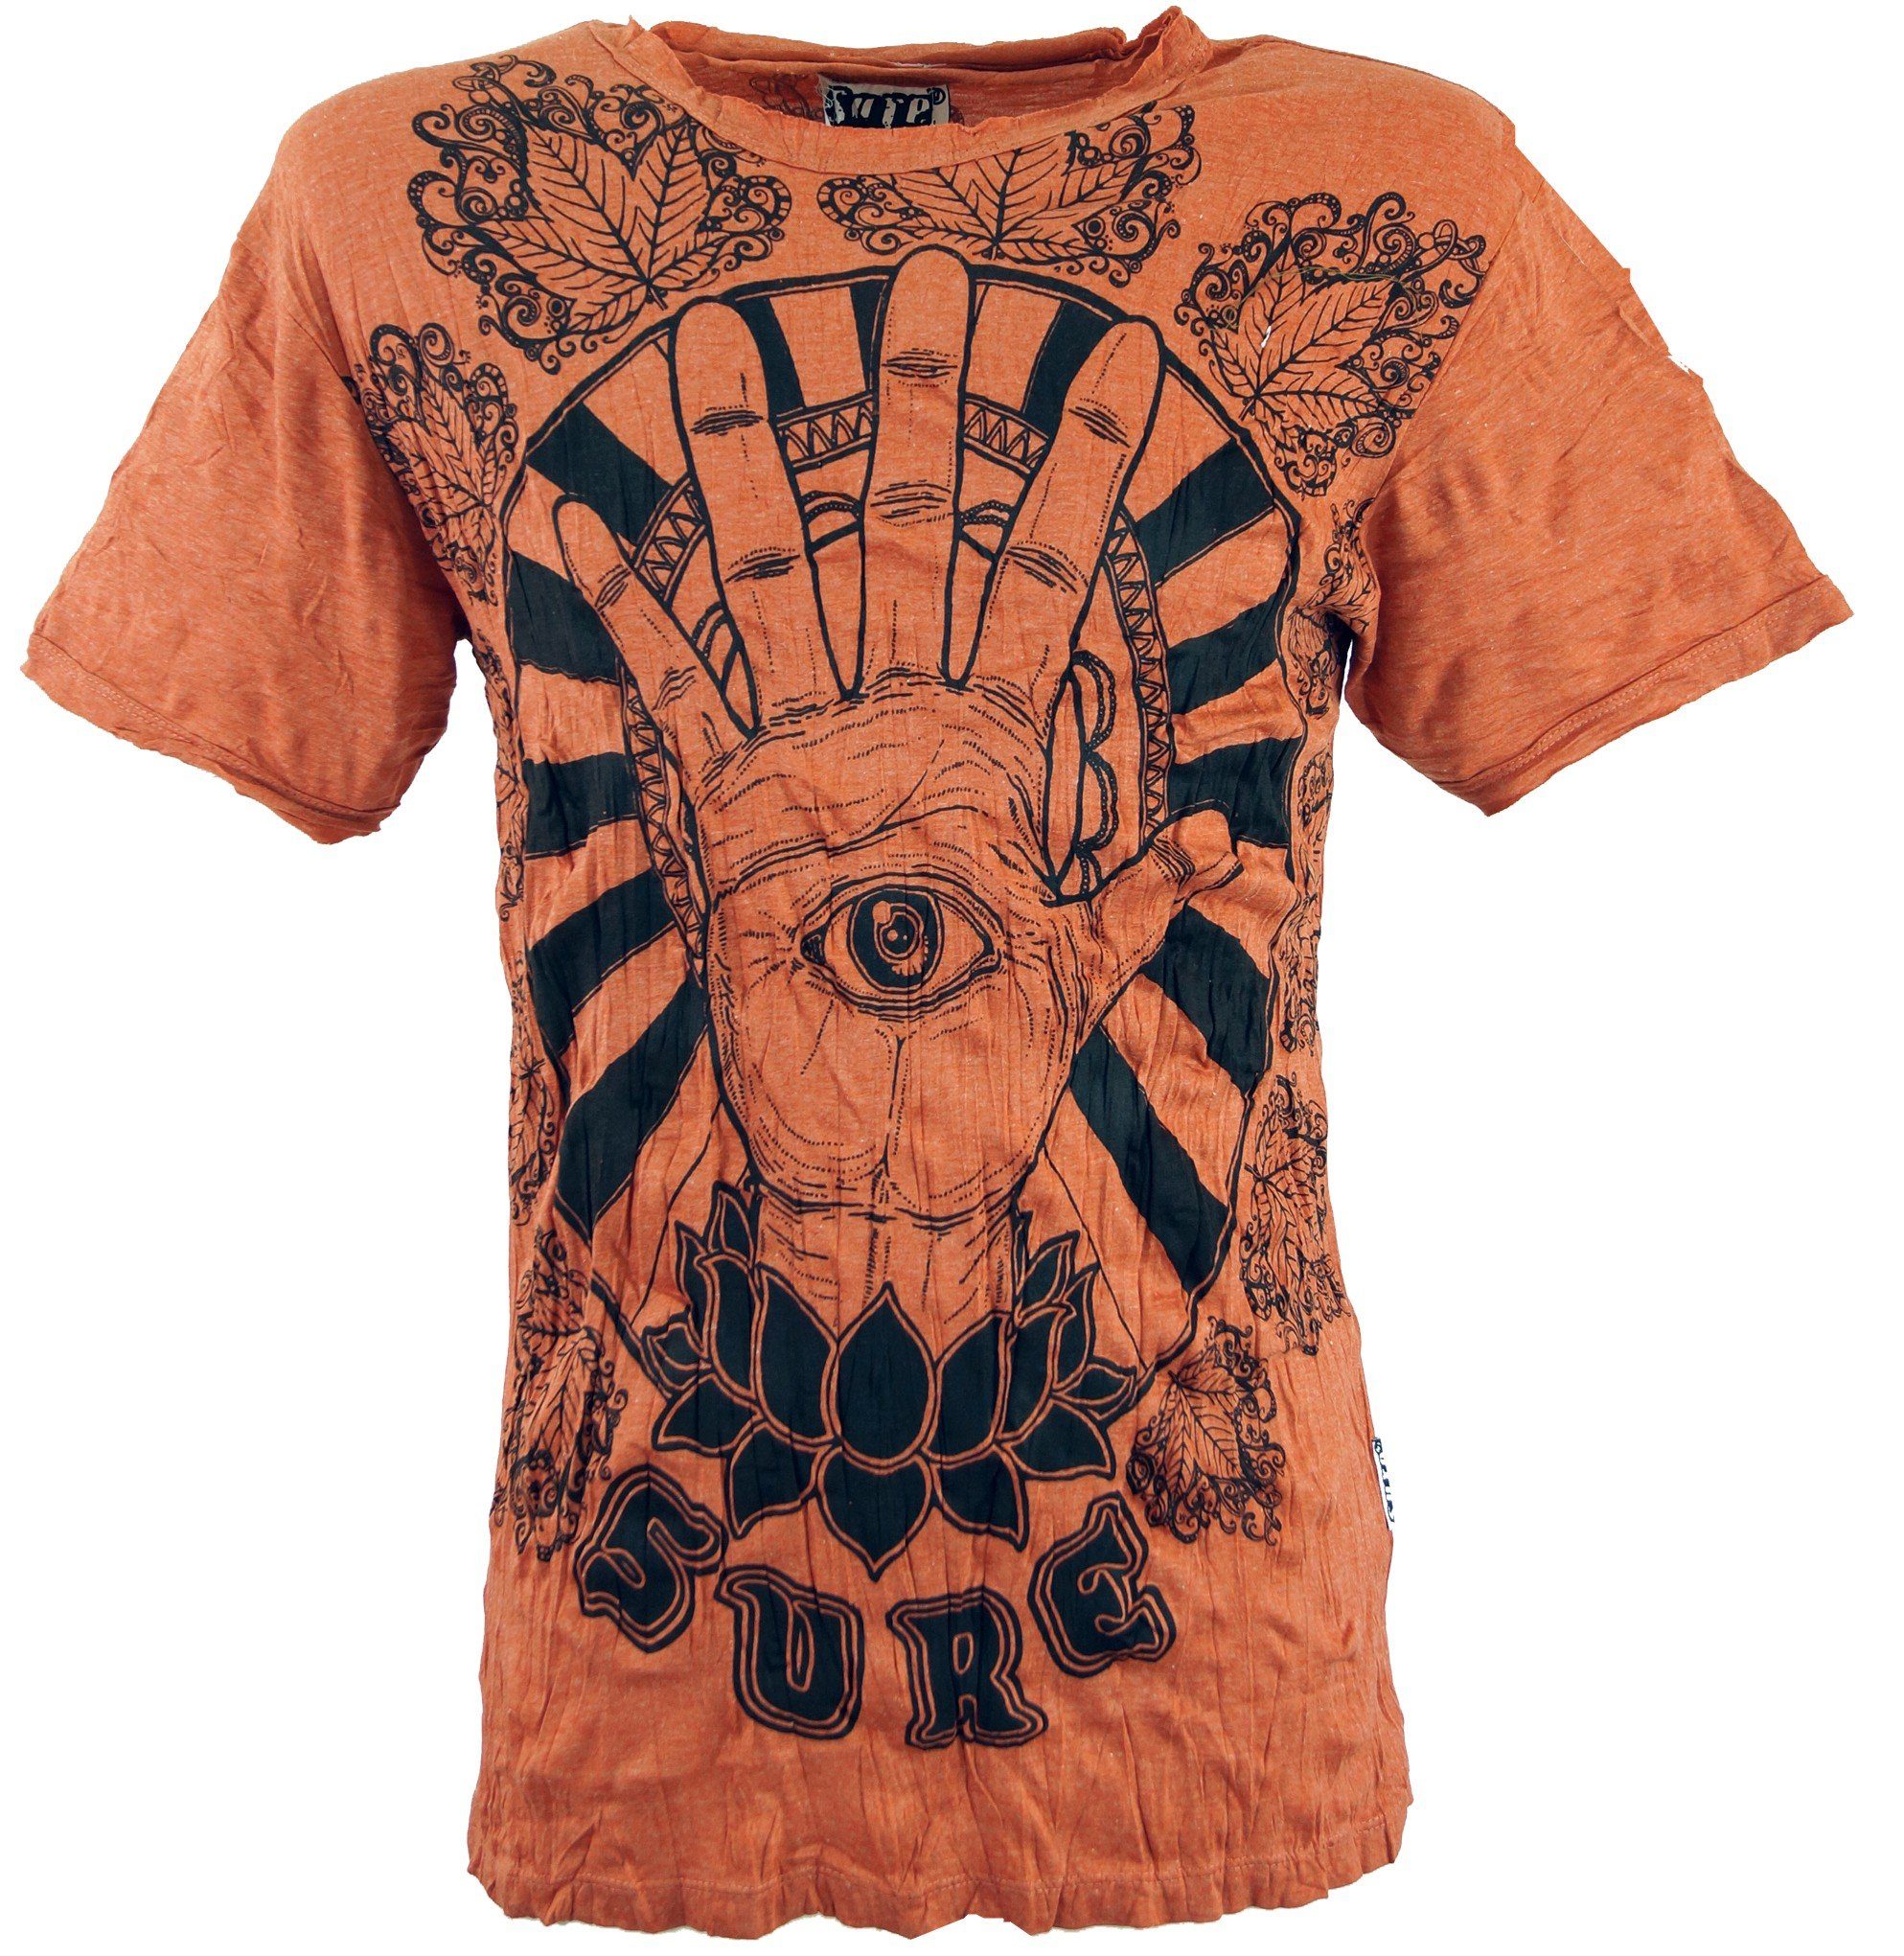 Guru-Shop T-Shirt Sure T-Shirt Magic Eye - rostorange Goa Style, Festival, alternative Bekleidung